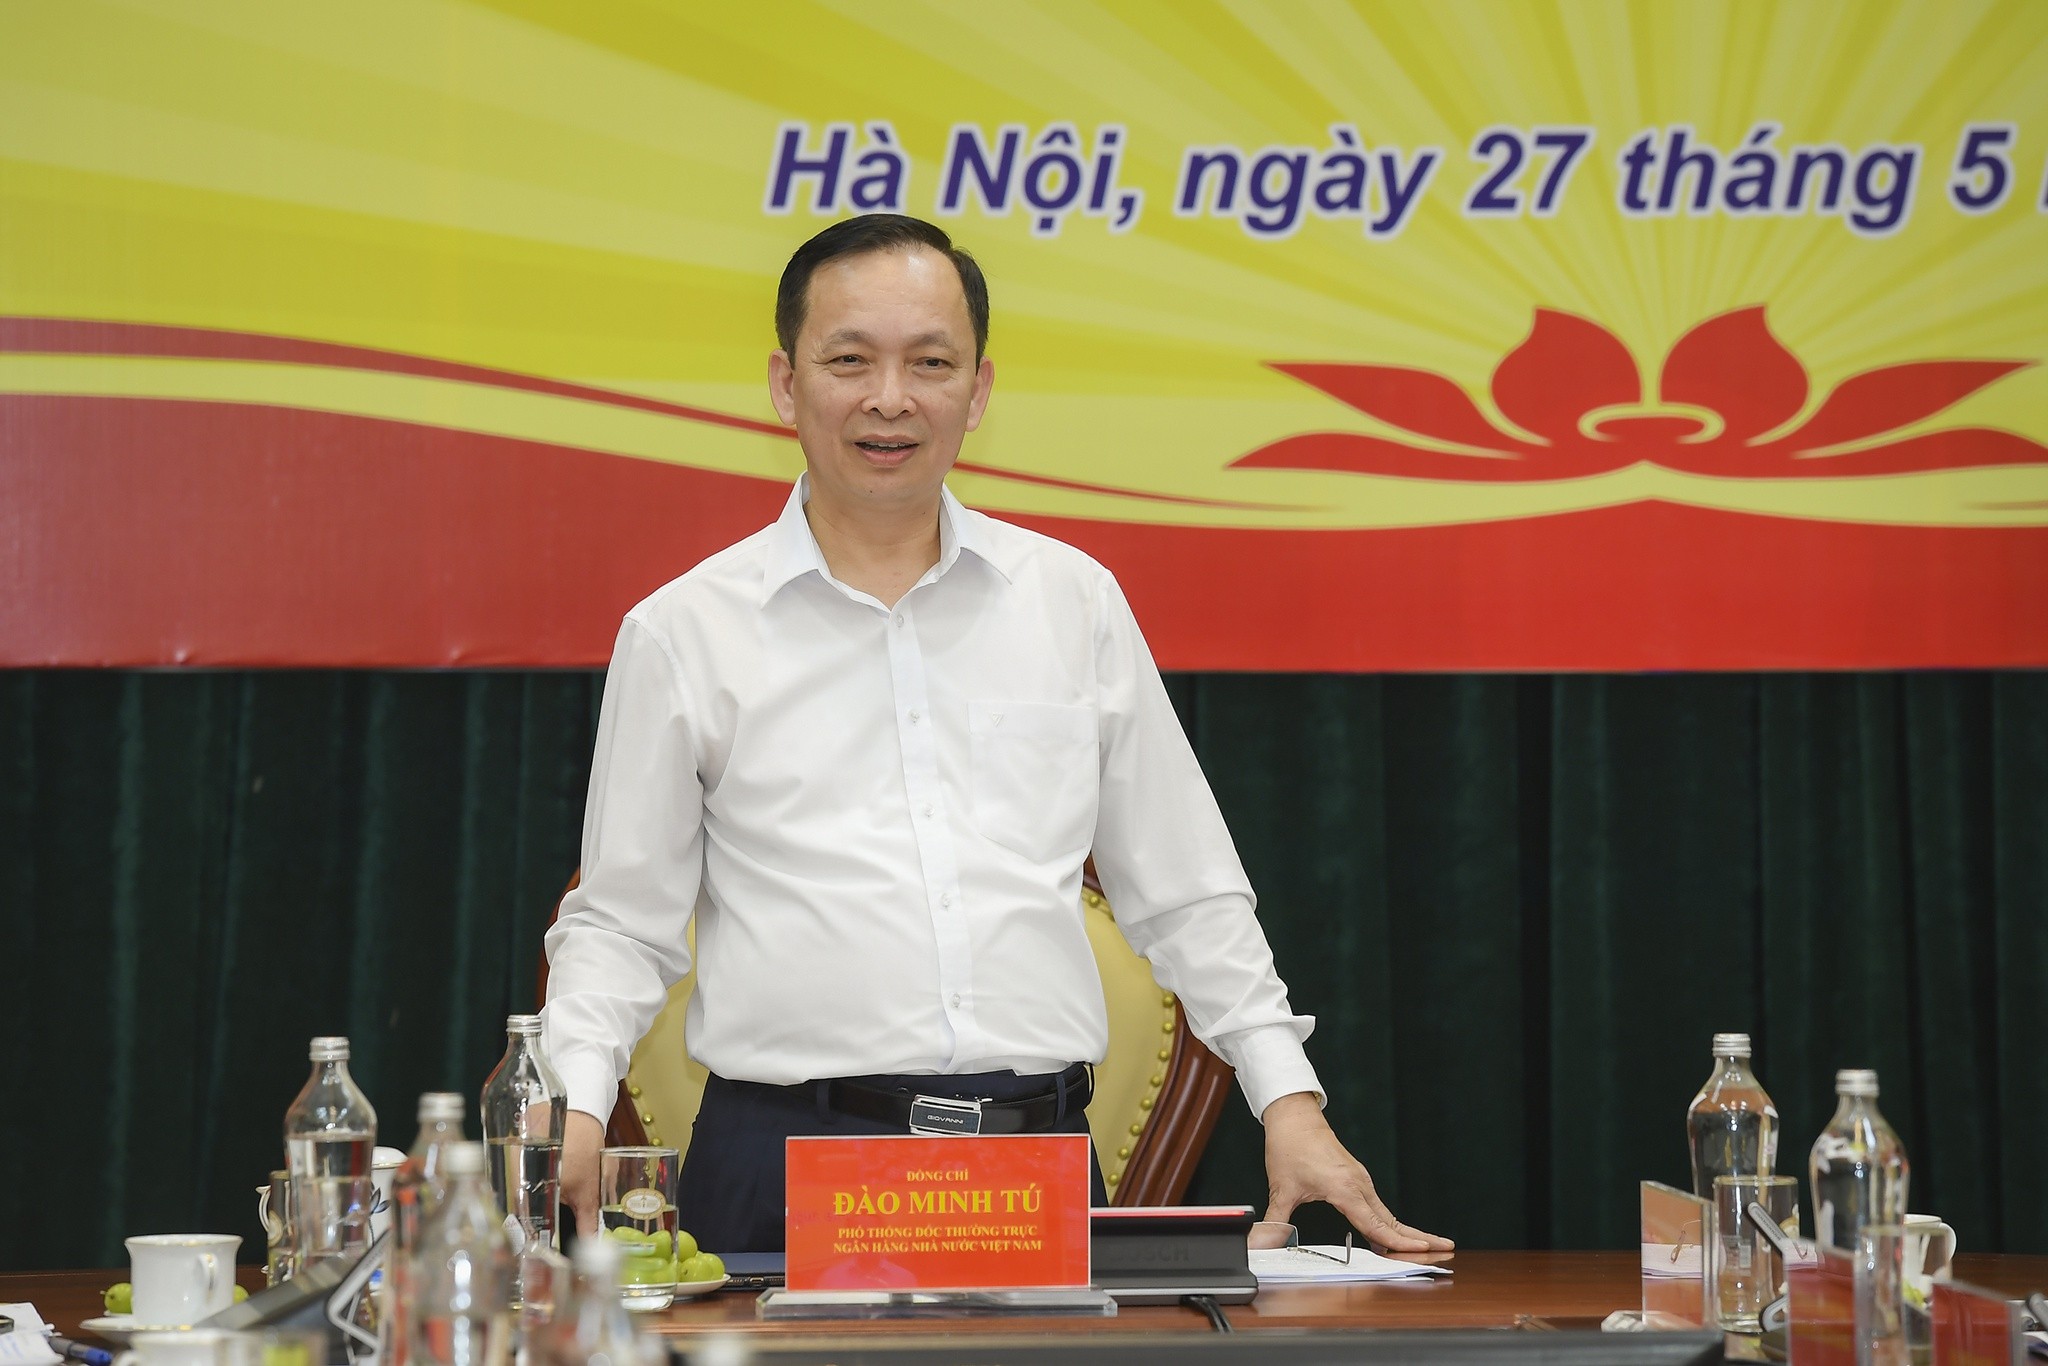 
Phó thống đốc Đào Minh Tú khẳng định NHNN không có chủ trương siết chặt tín dụng với lĩnh vực bất động sản. Ảnh: NHNN.
